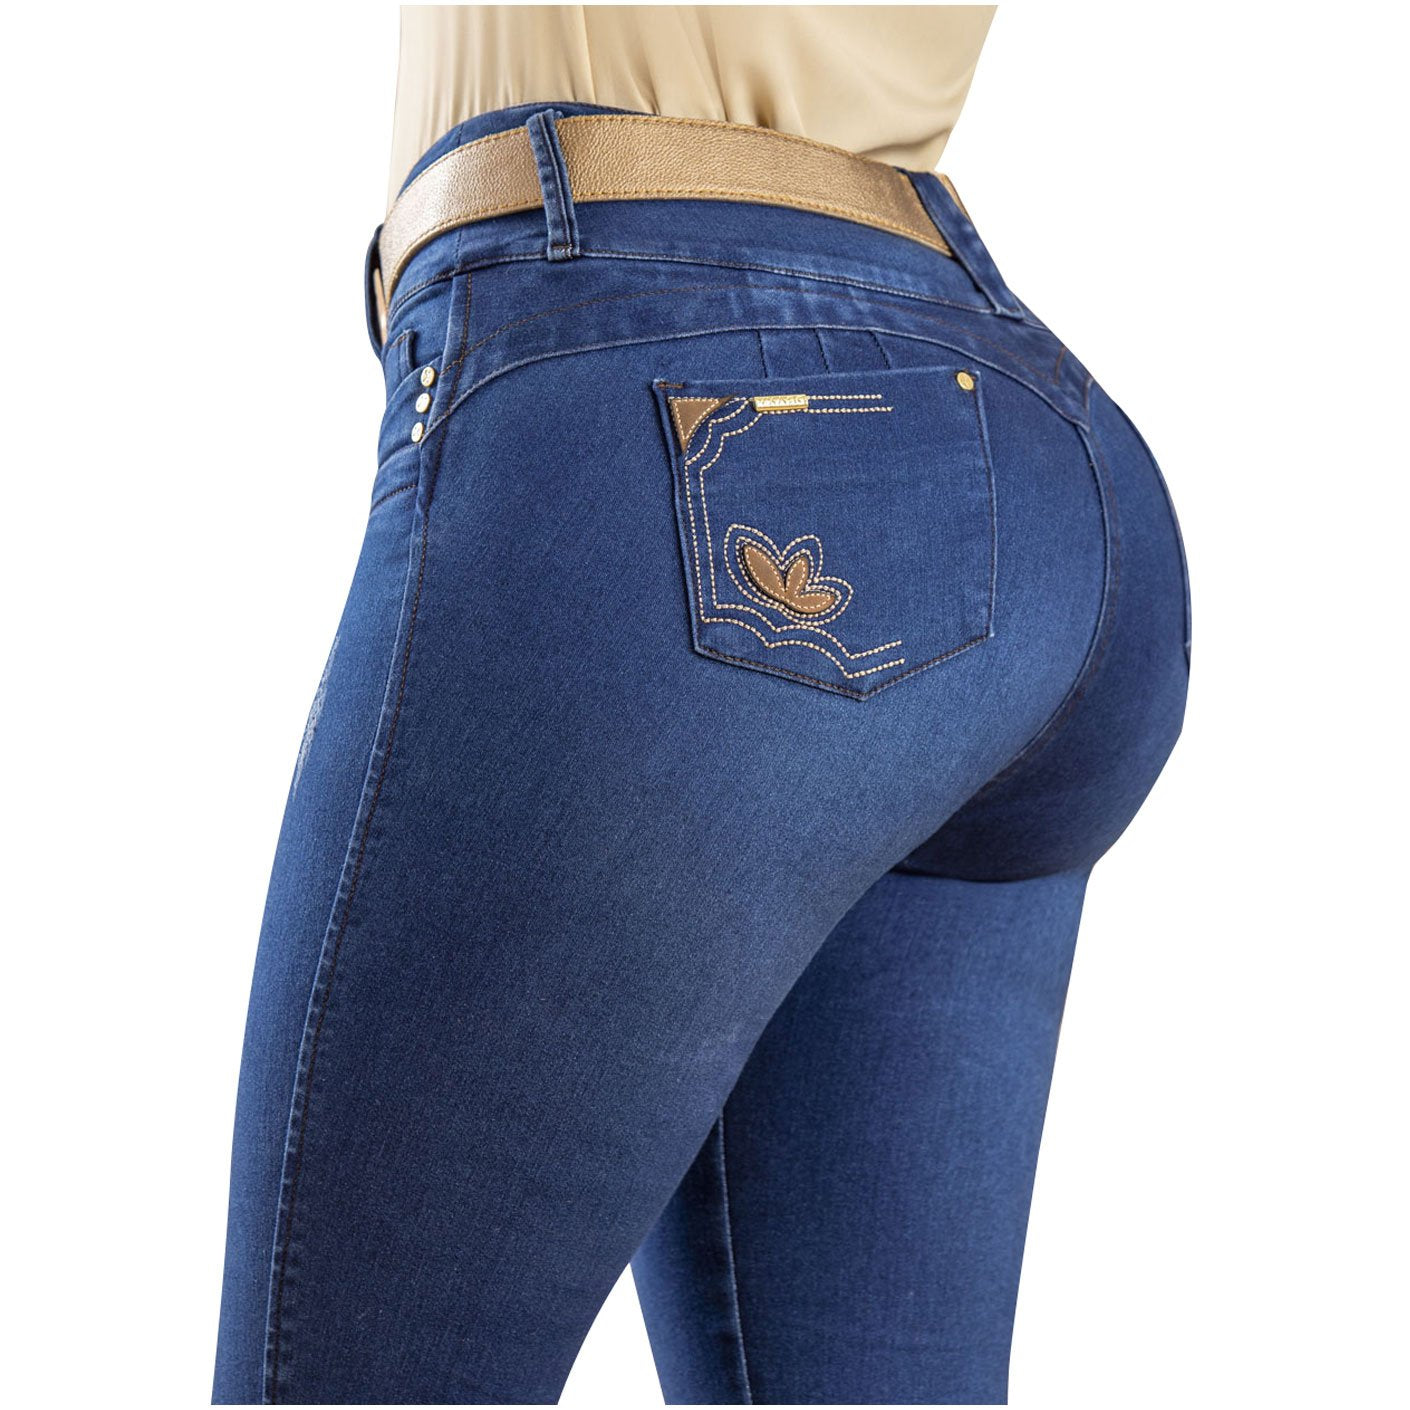 Draxy 1449 | Heavy Butt Lifter & Booster Classic Skinny Tight Looks in Denim Jeans - fajacolombian